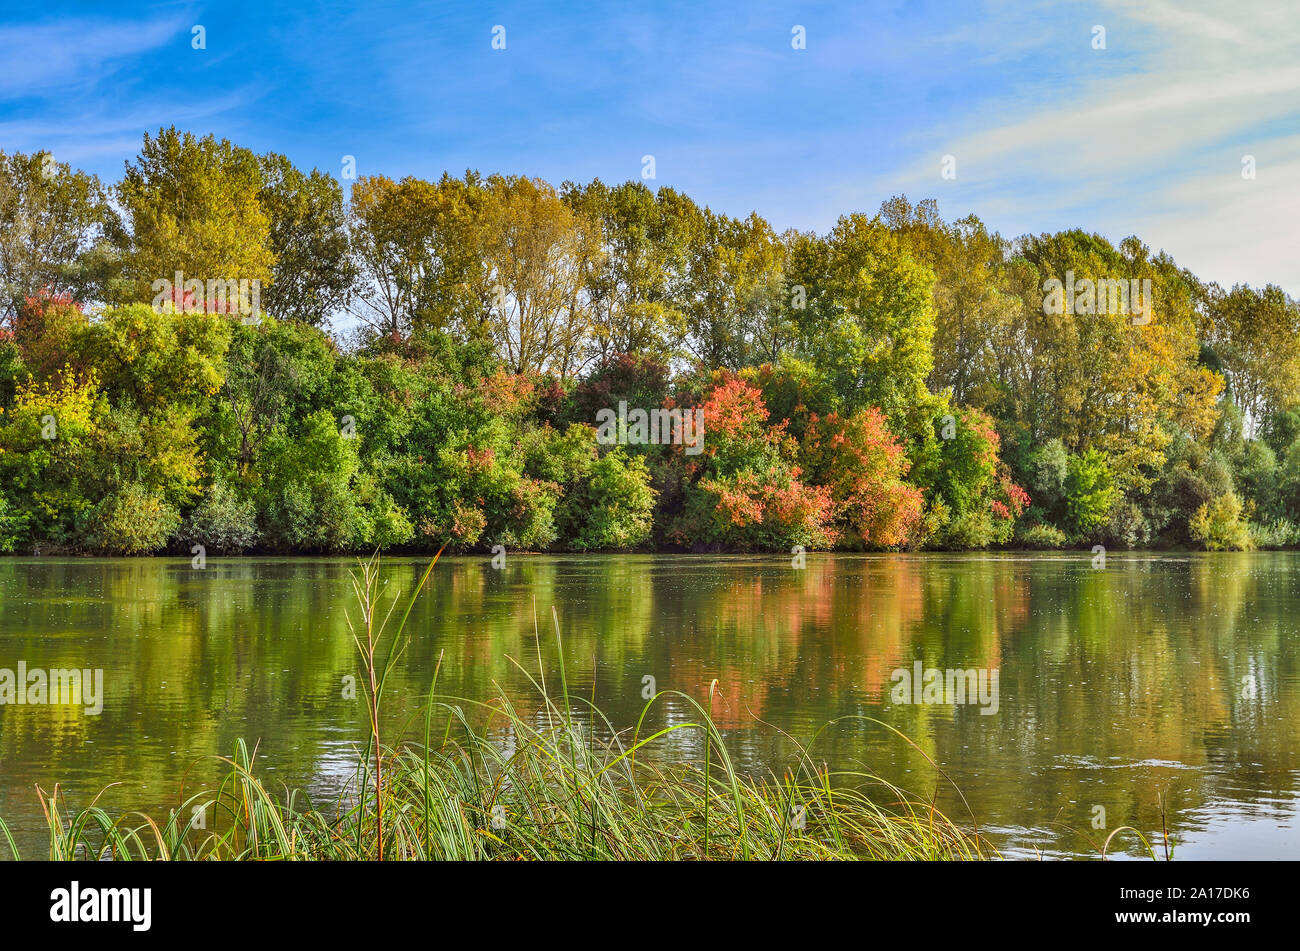 Paysage d'automne sur la banque du fleuve. Lumineux multicolores le feuillage des arbres et arbustes de la forêt et ciel bleu reflété dans l'eau surface.Gree Banque D'Images